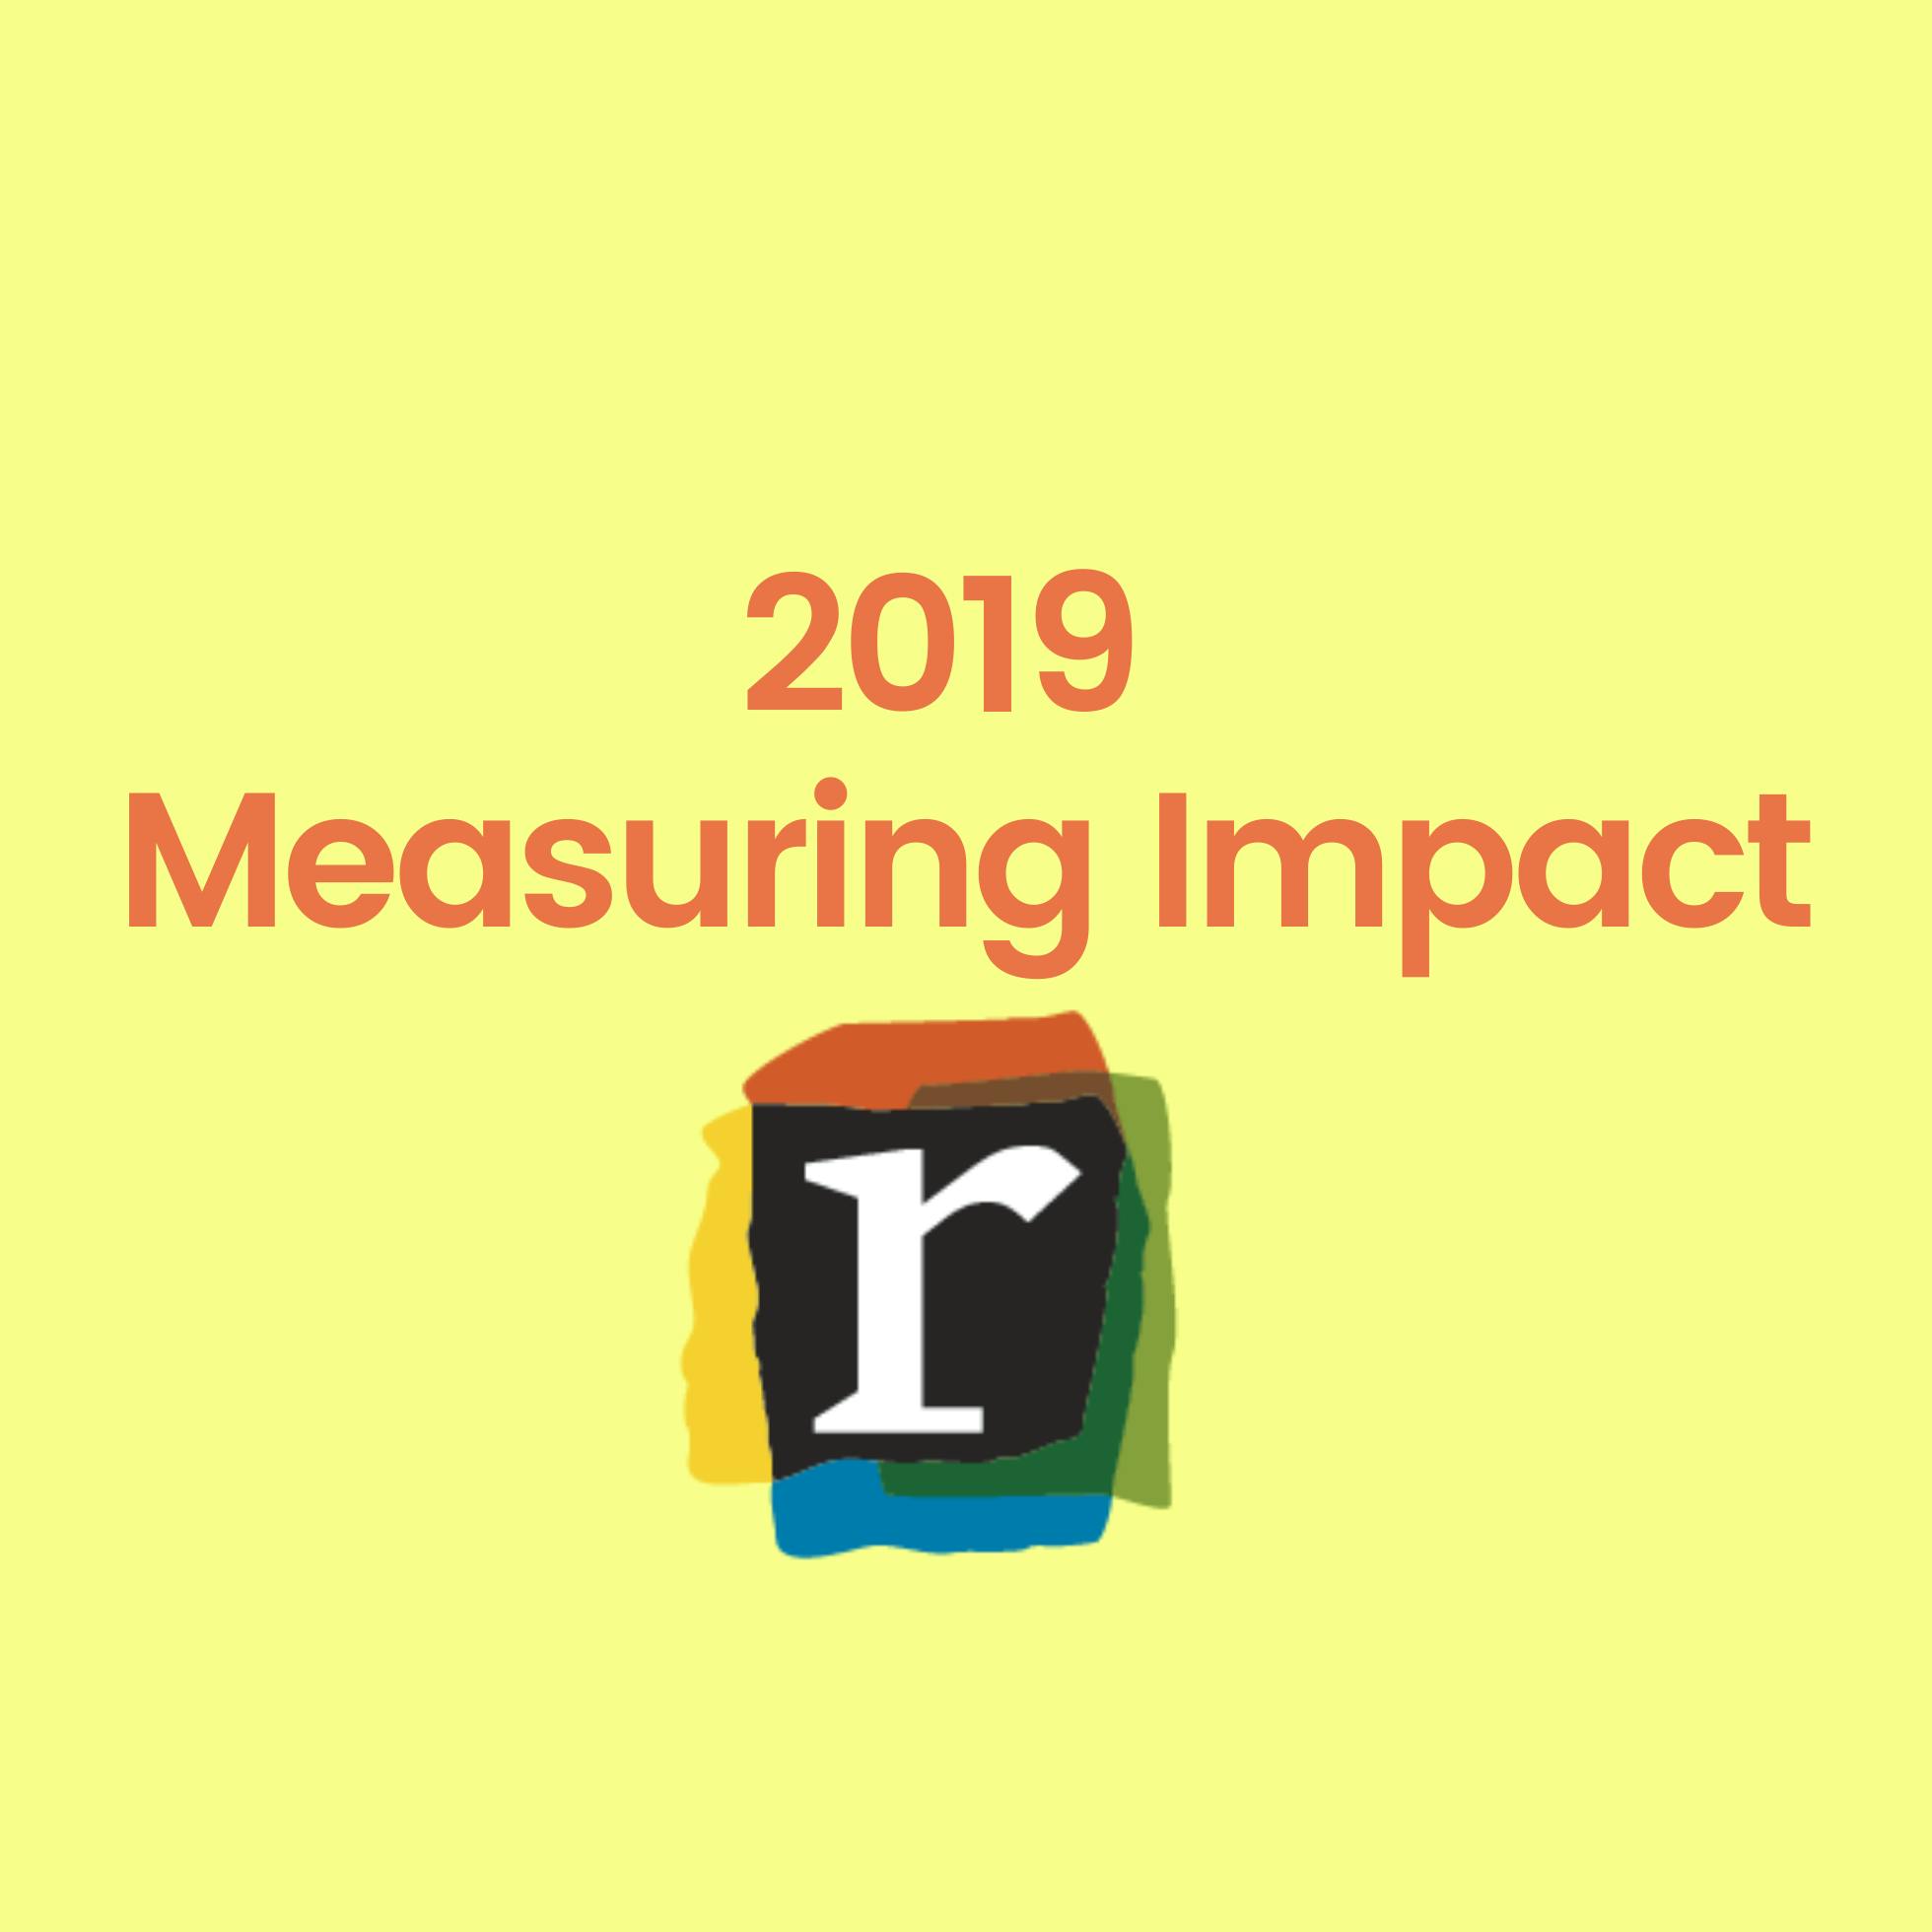 2019 Measuring Impact